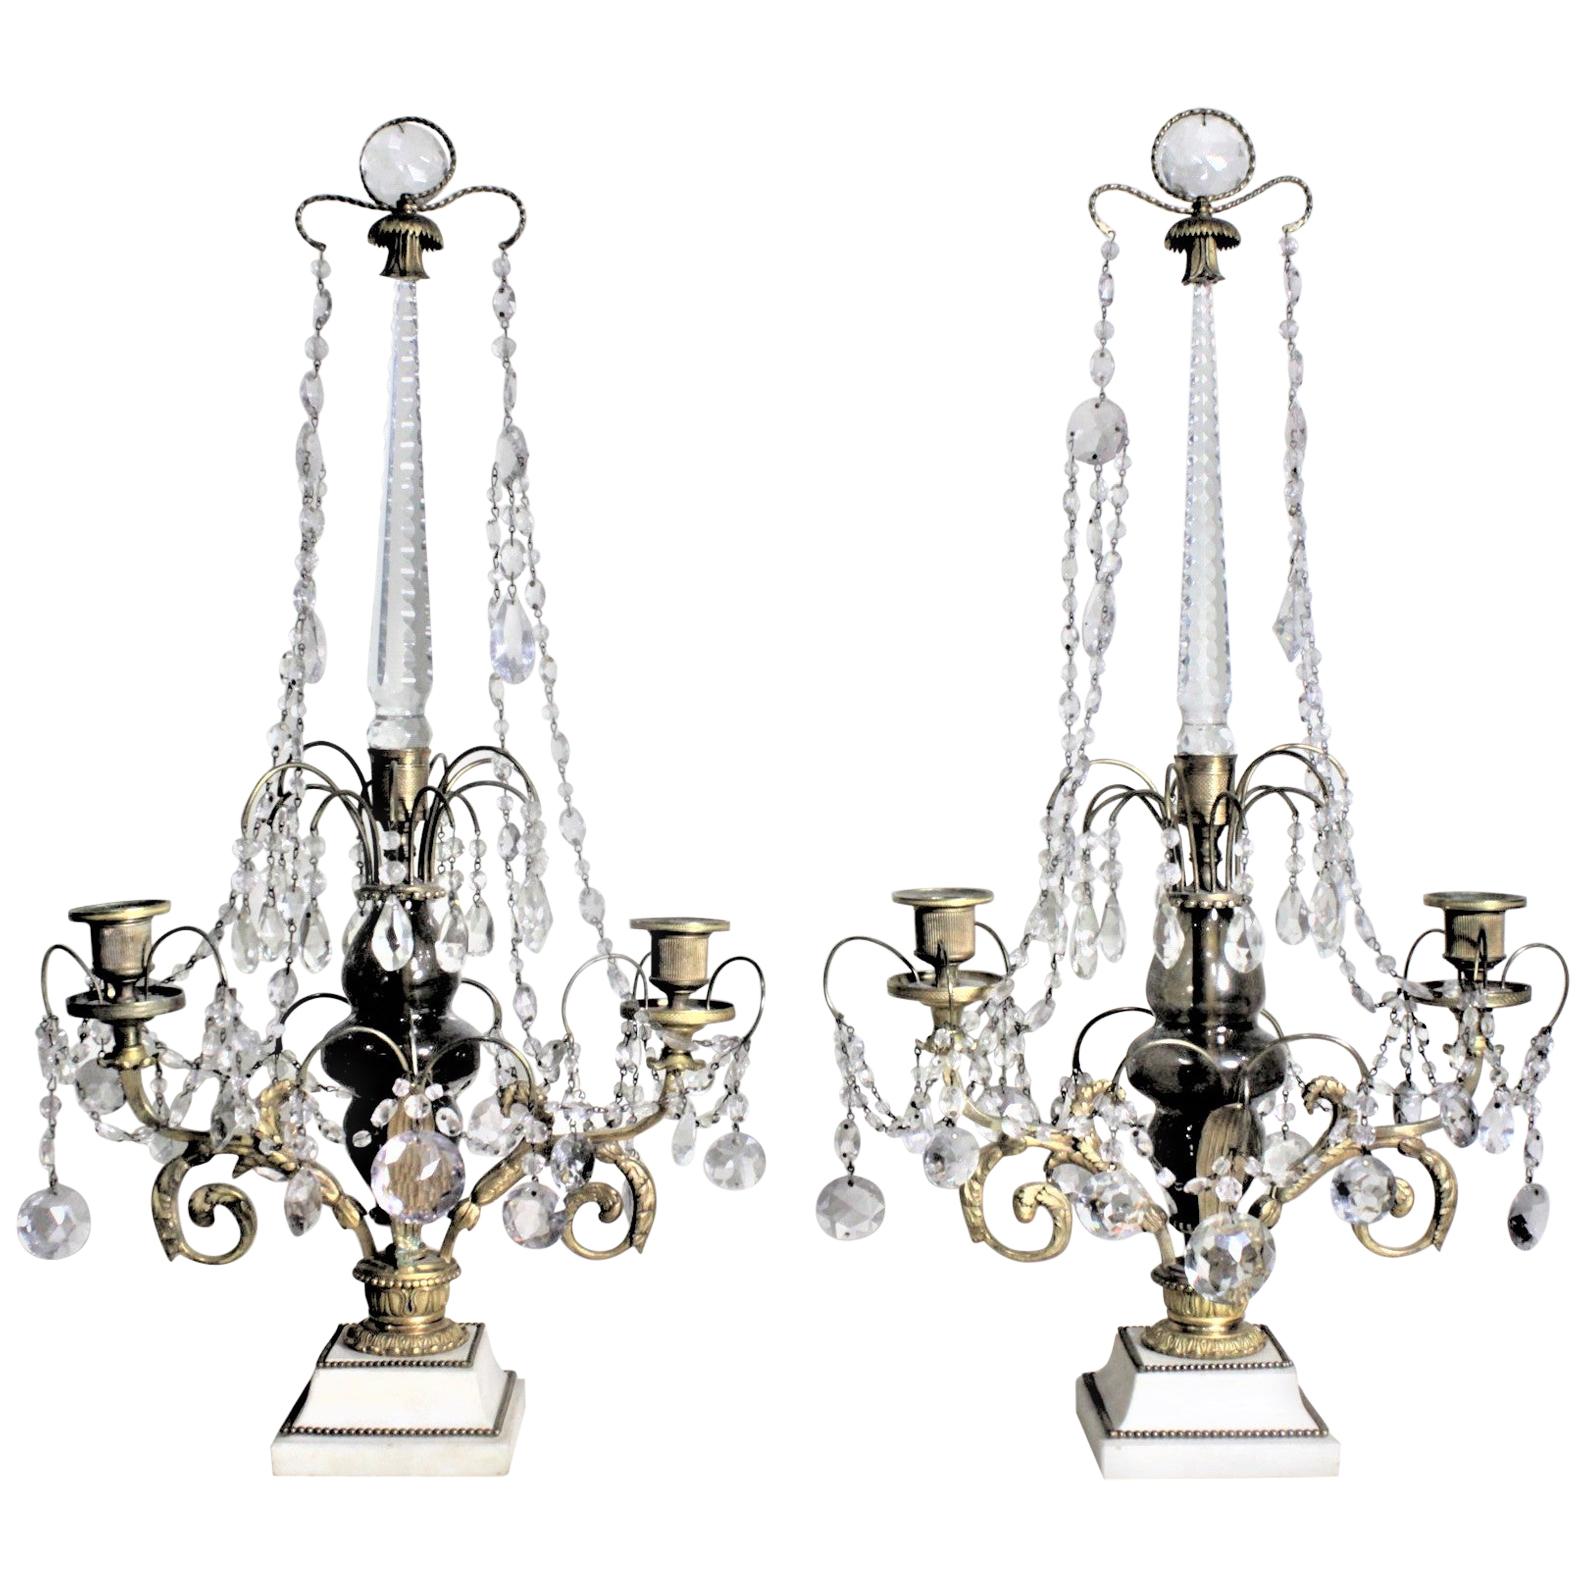 Paire de candélabres ou chandeliers anciens élaborés en bronze doré et cristal